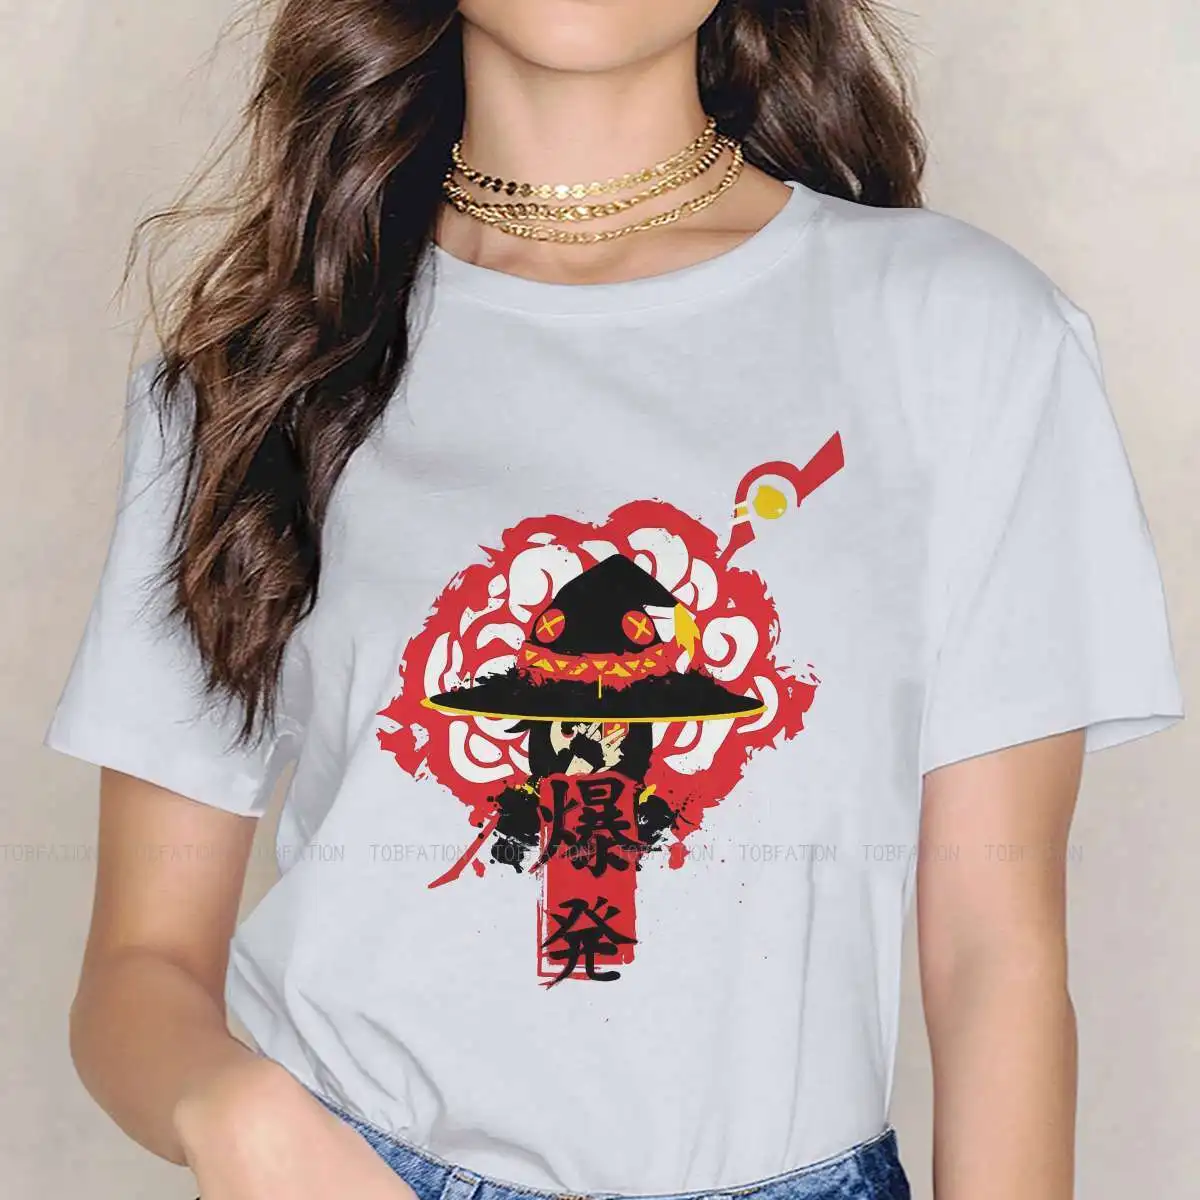 

Женская футболка KonoSuba с изображением бога благословения Аква темноты Аниме Девушки взрывные Волшебные женские топы футболки в стиле Харад...